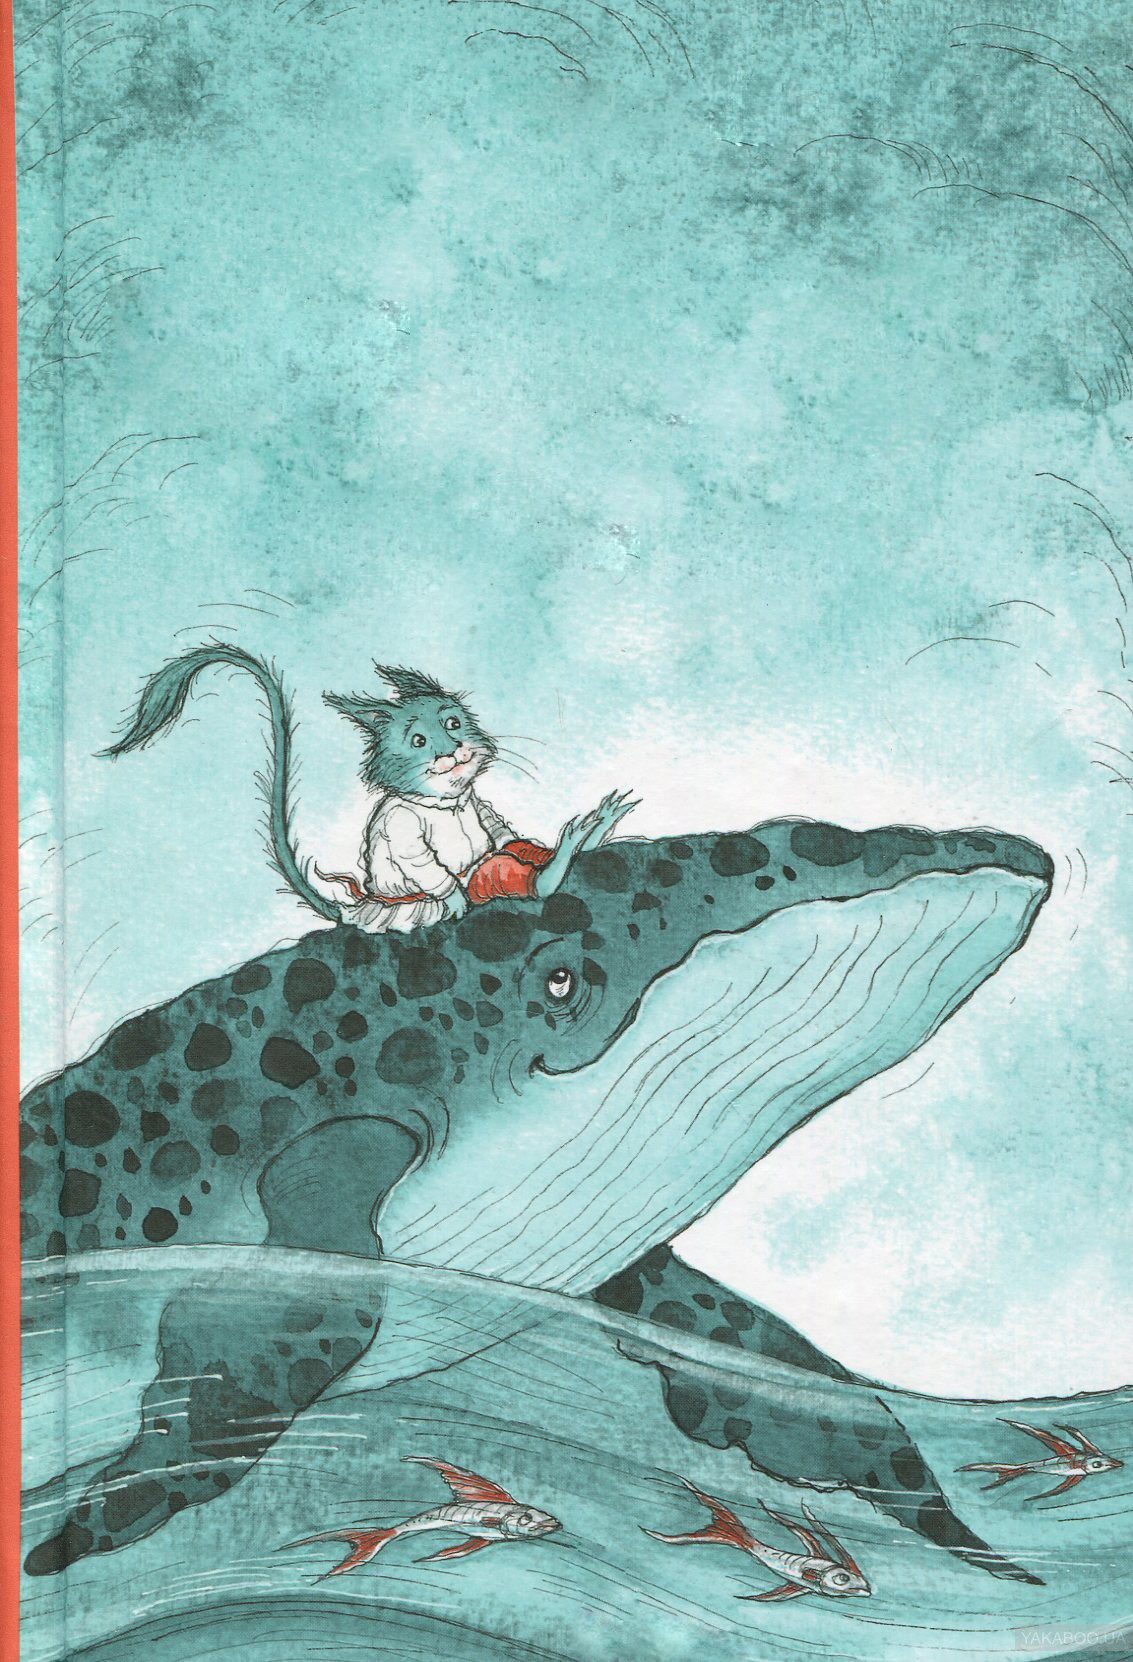 Книга про кита